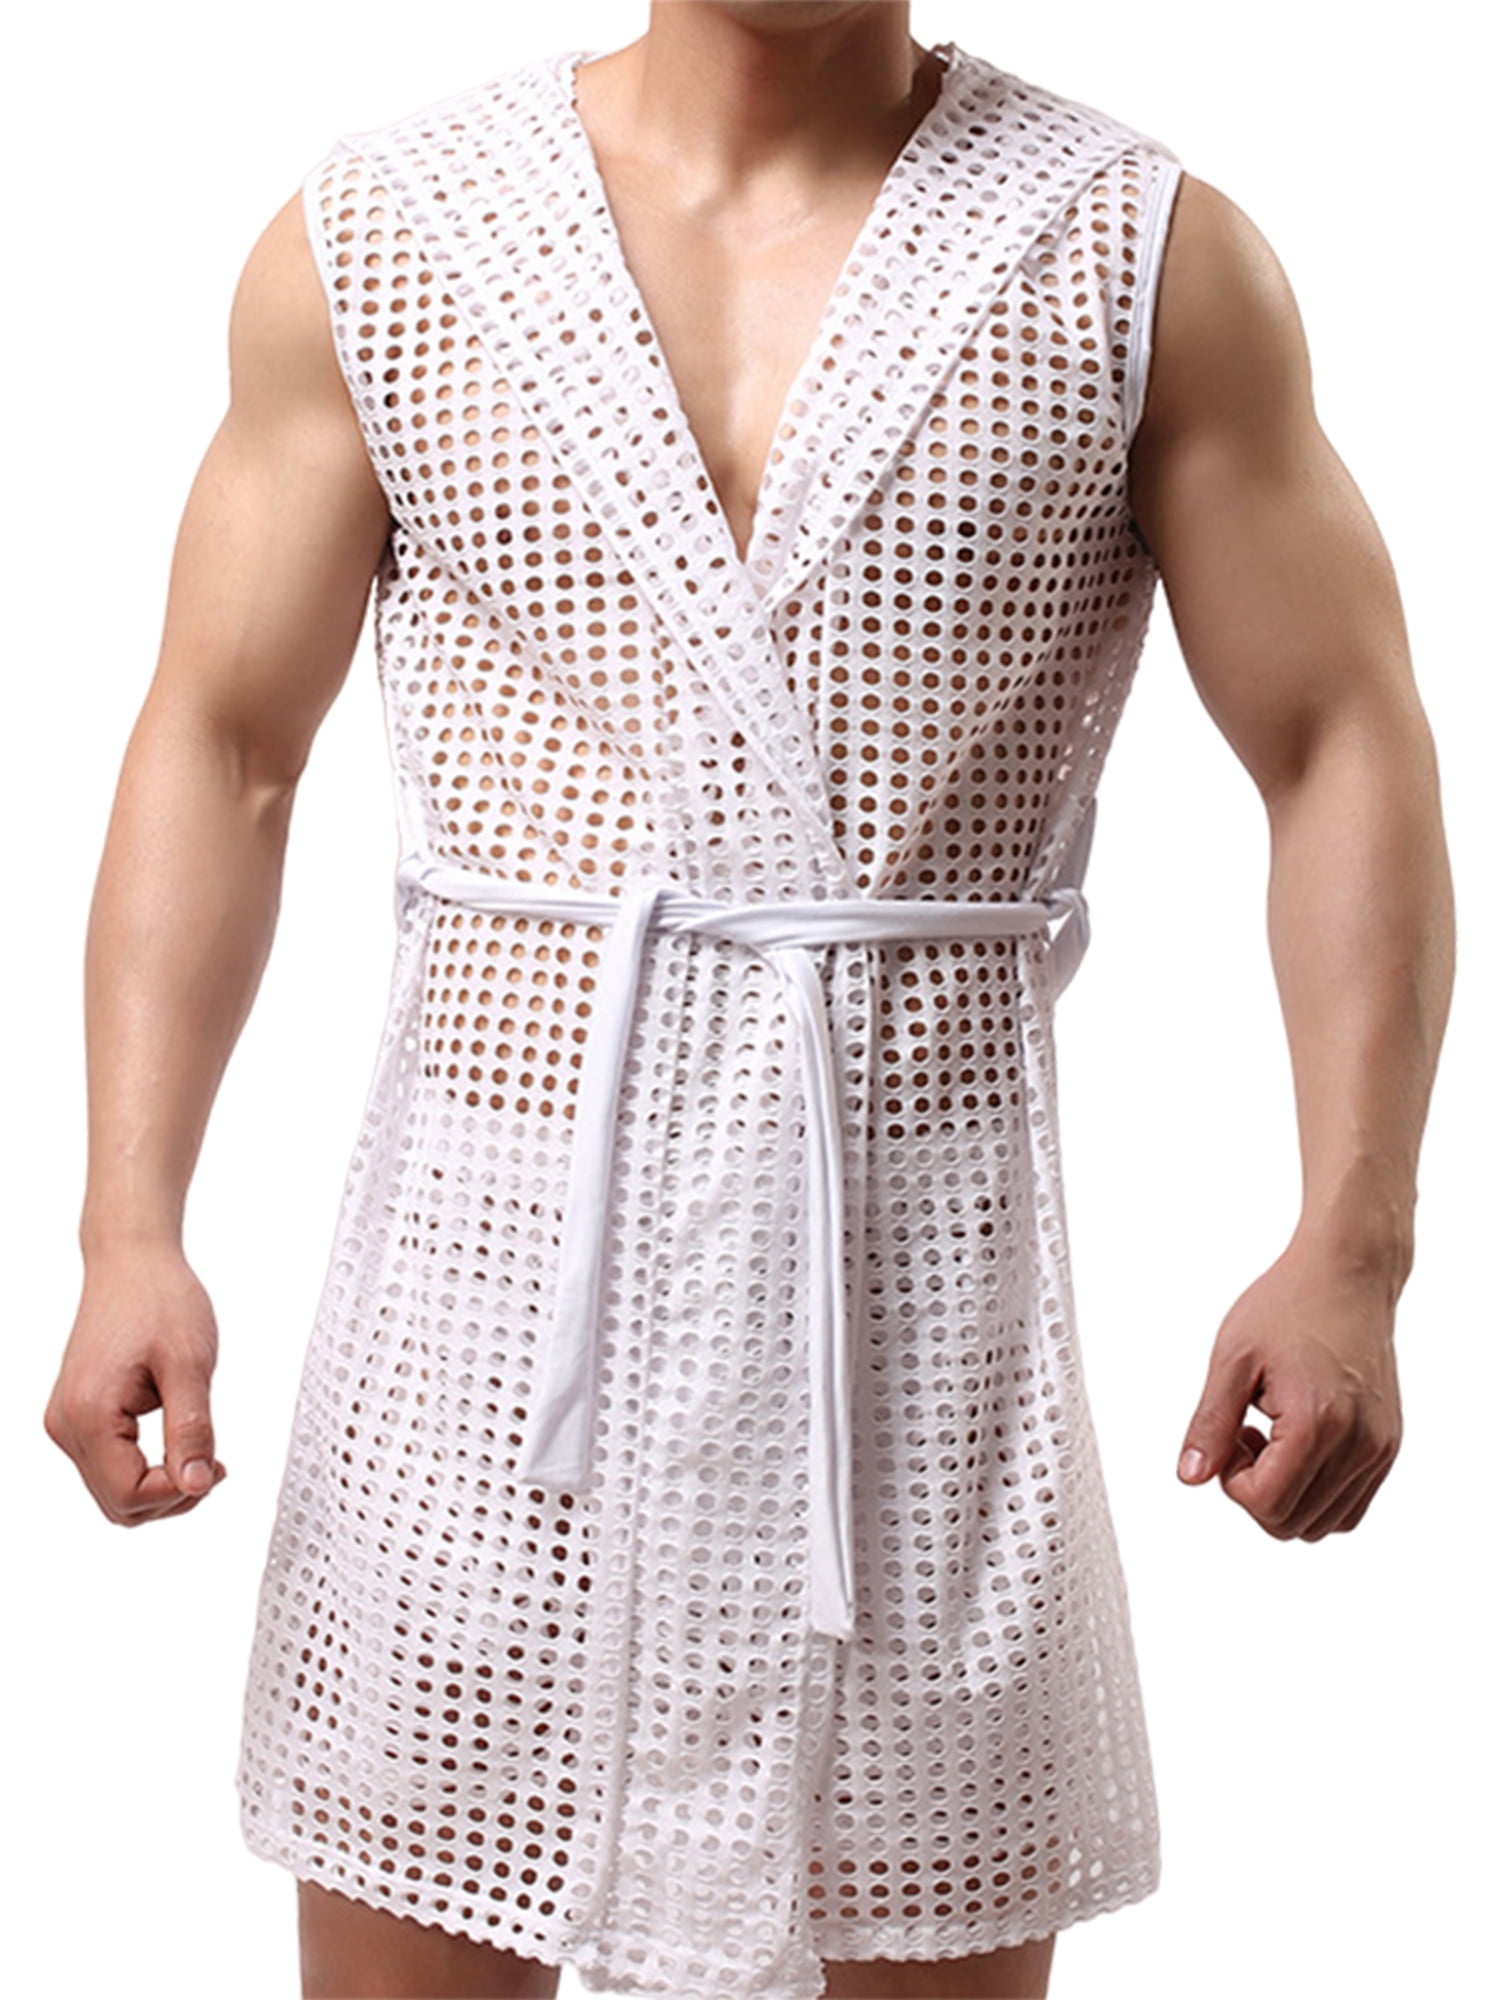 Men's Mesh Fishnet Robes Hooded Short Sleeveless Bathrobes Nightwear